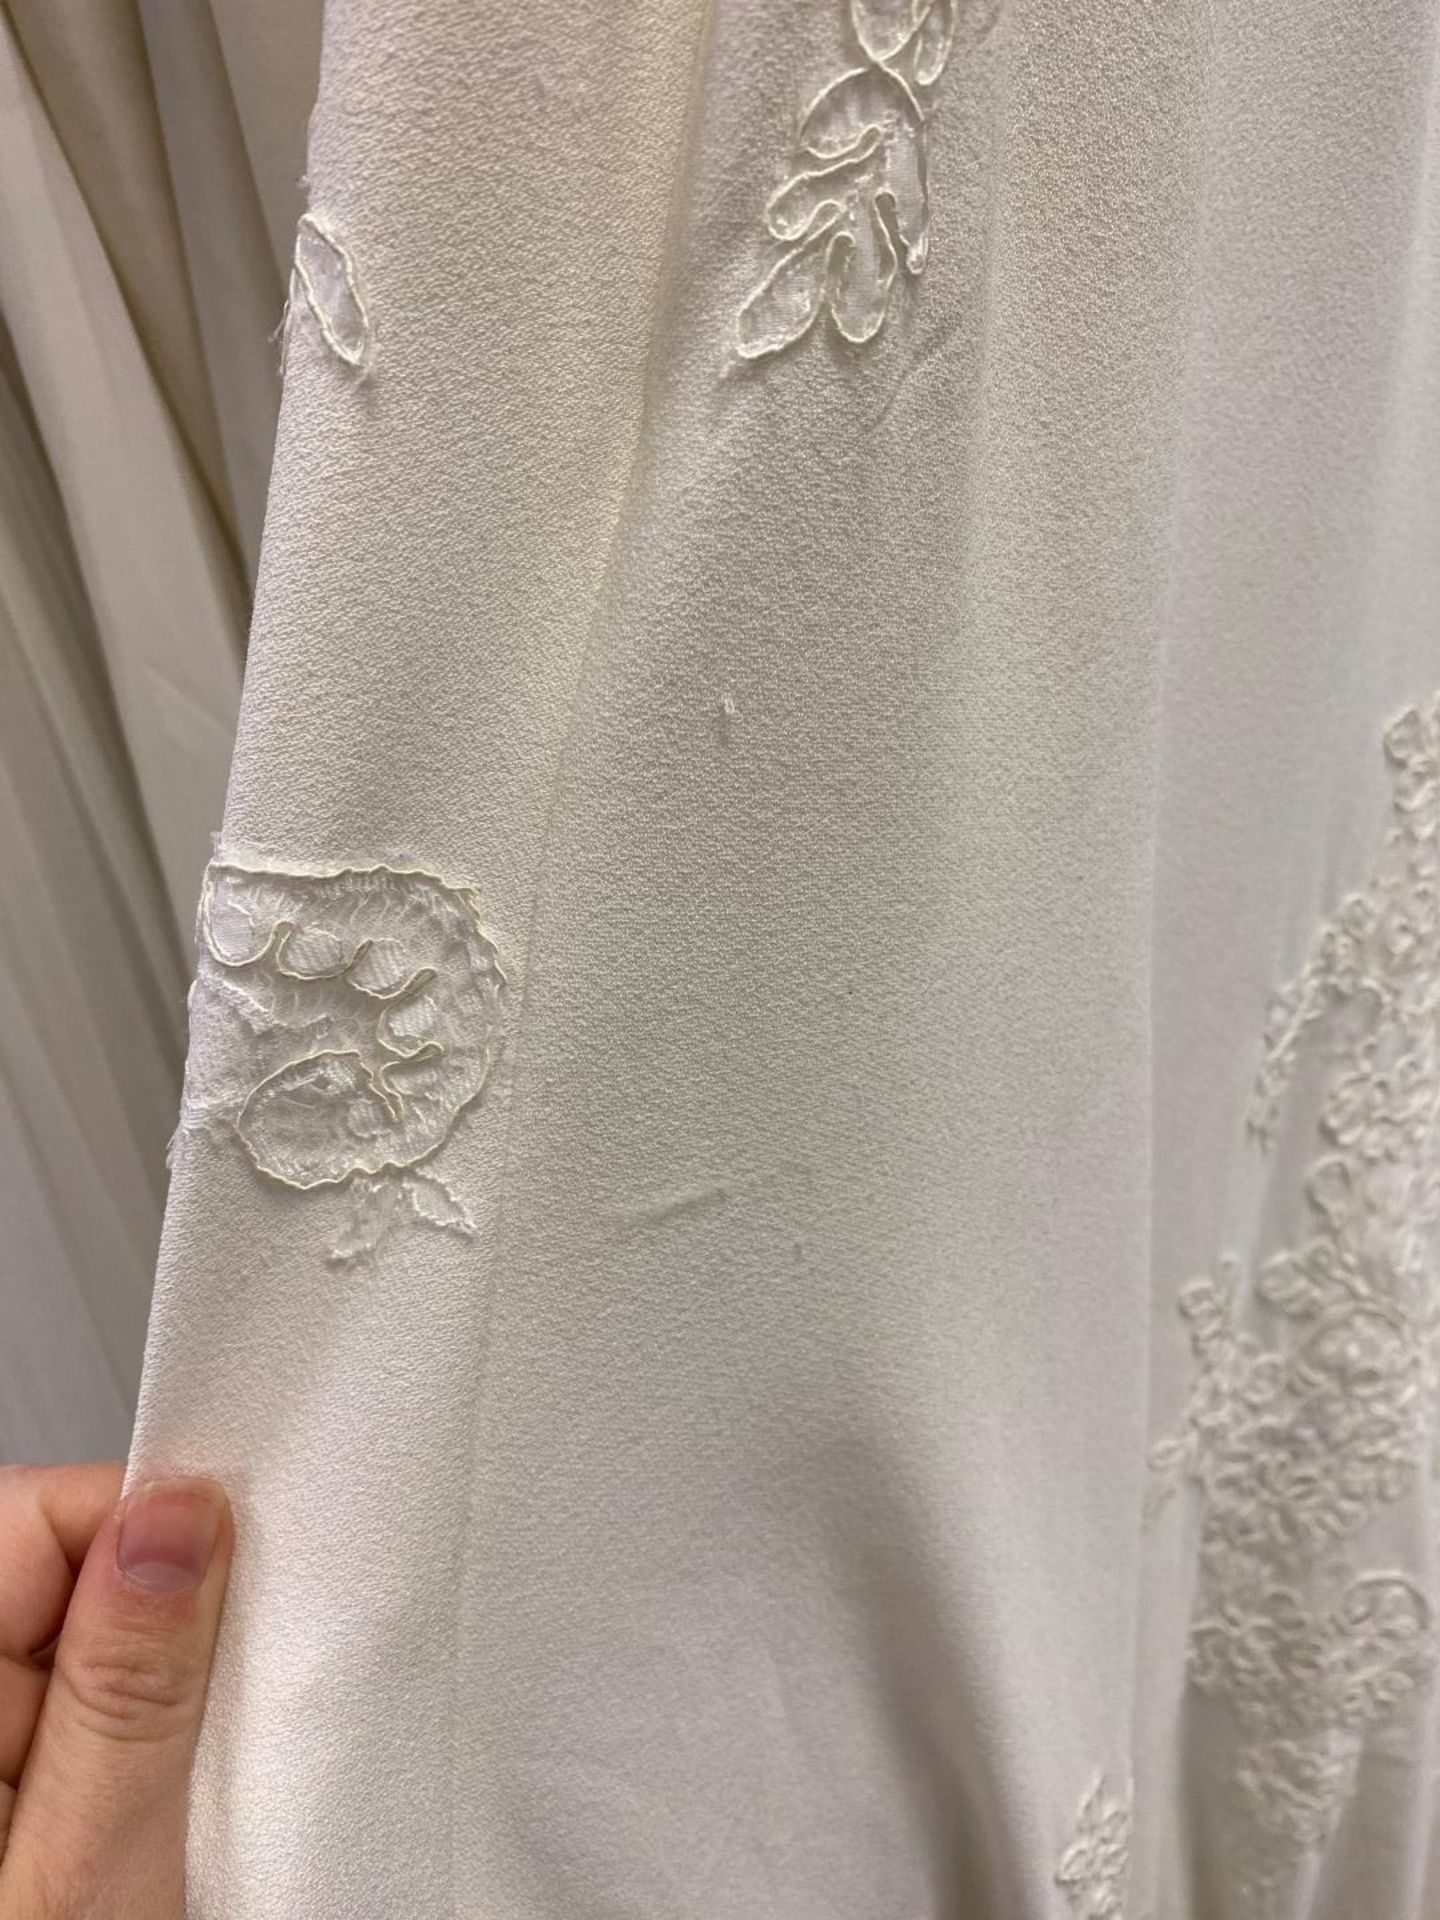 1 x MORI LEE Stunning Chiffon & Lace Biased Cut Designer Wedding Dress Bridal Gown RRP £1,500 UK 12 - Image 2 of 10